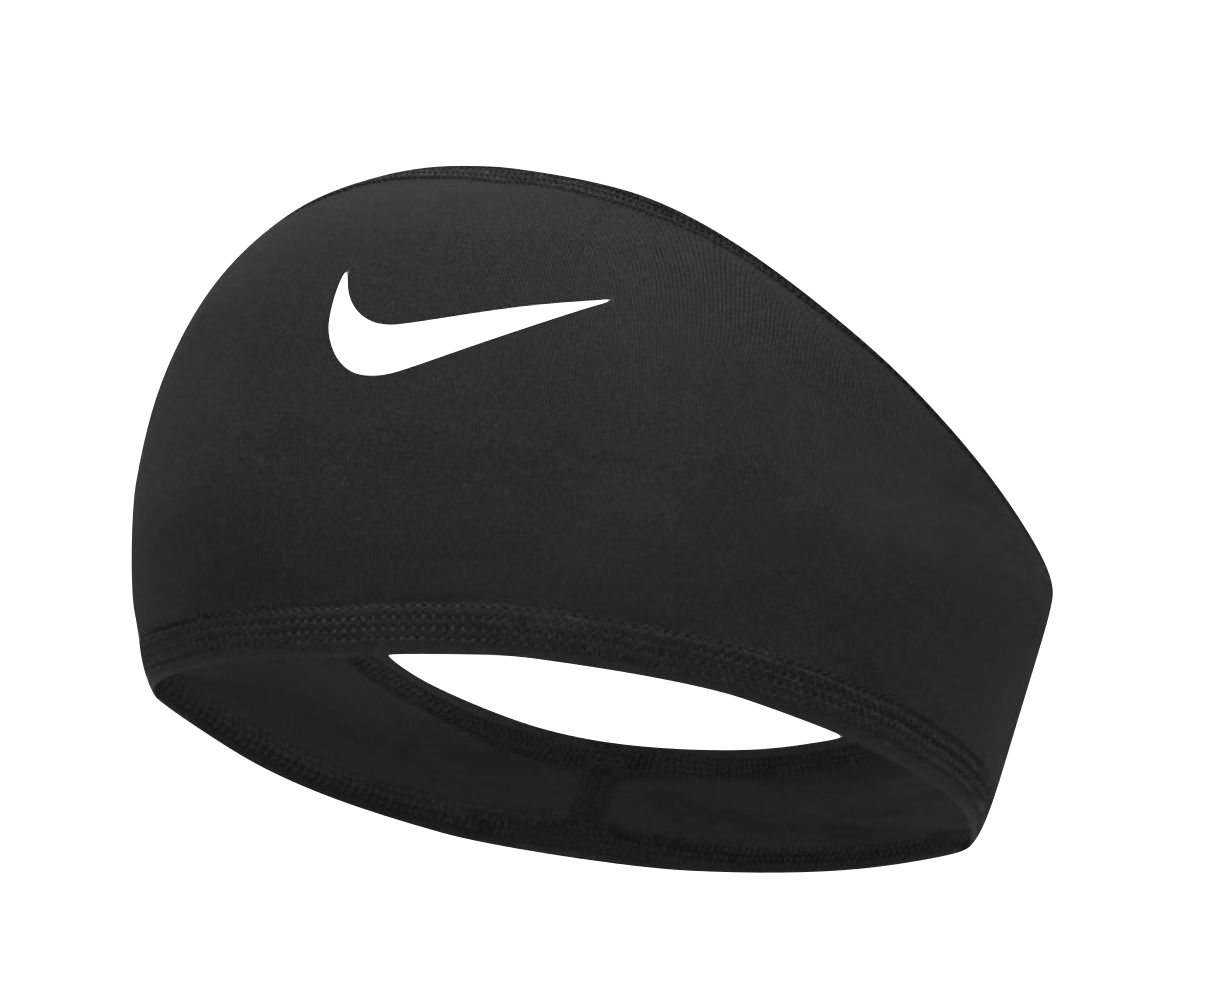 Banda Nike Pro Skull Wrap 5.0 Unitalla